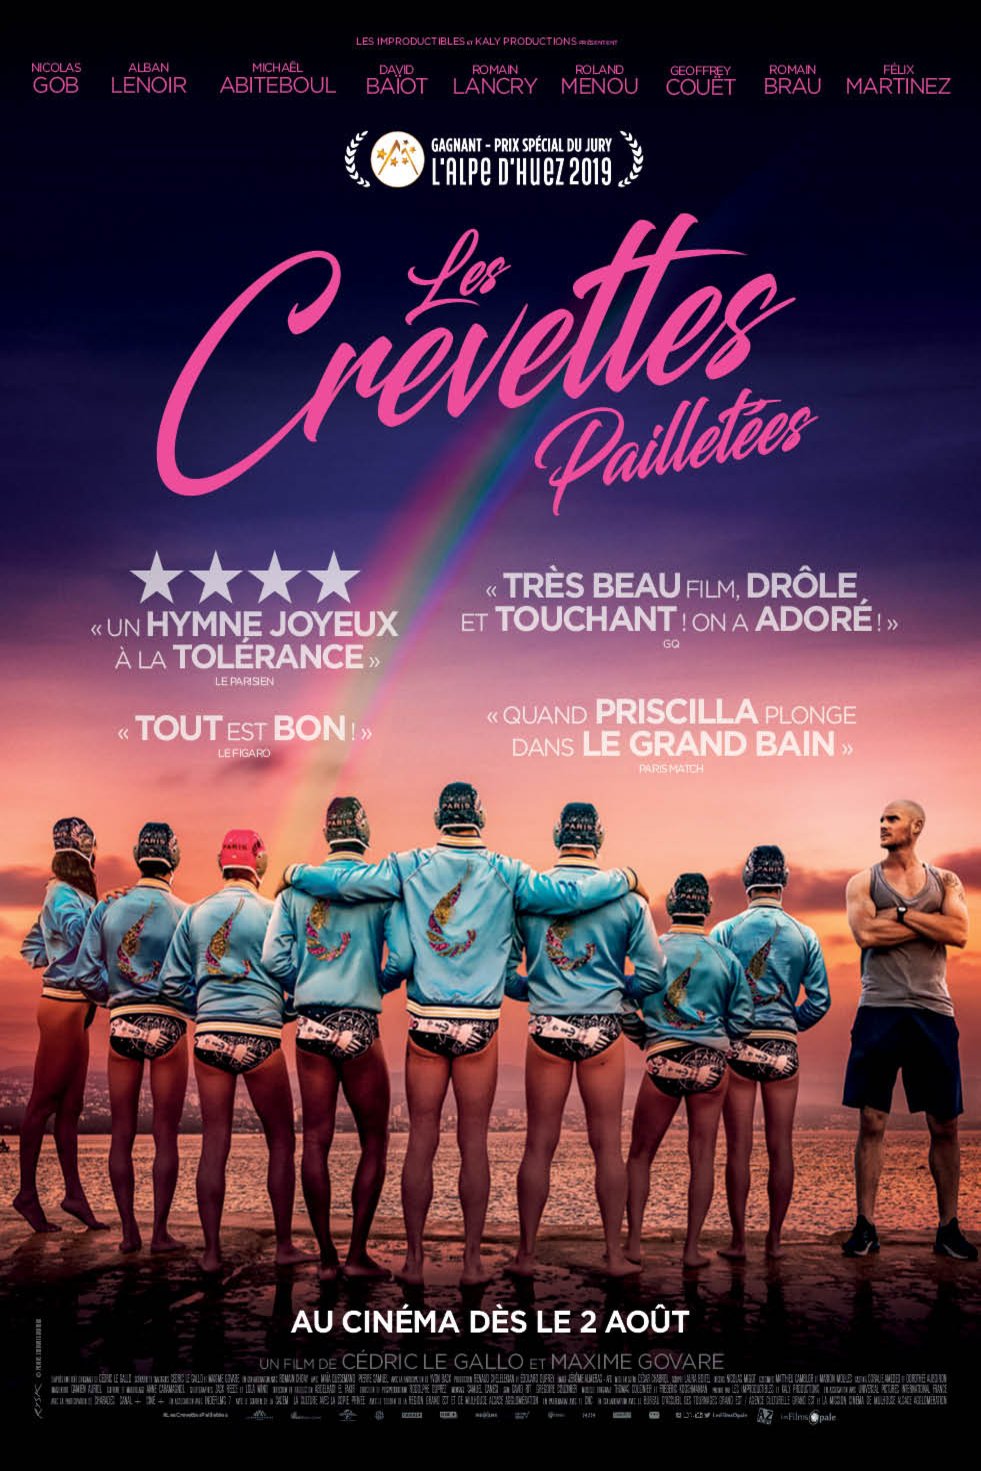 Poster of the movie Les crevettes pailletées